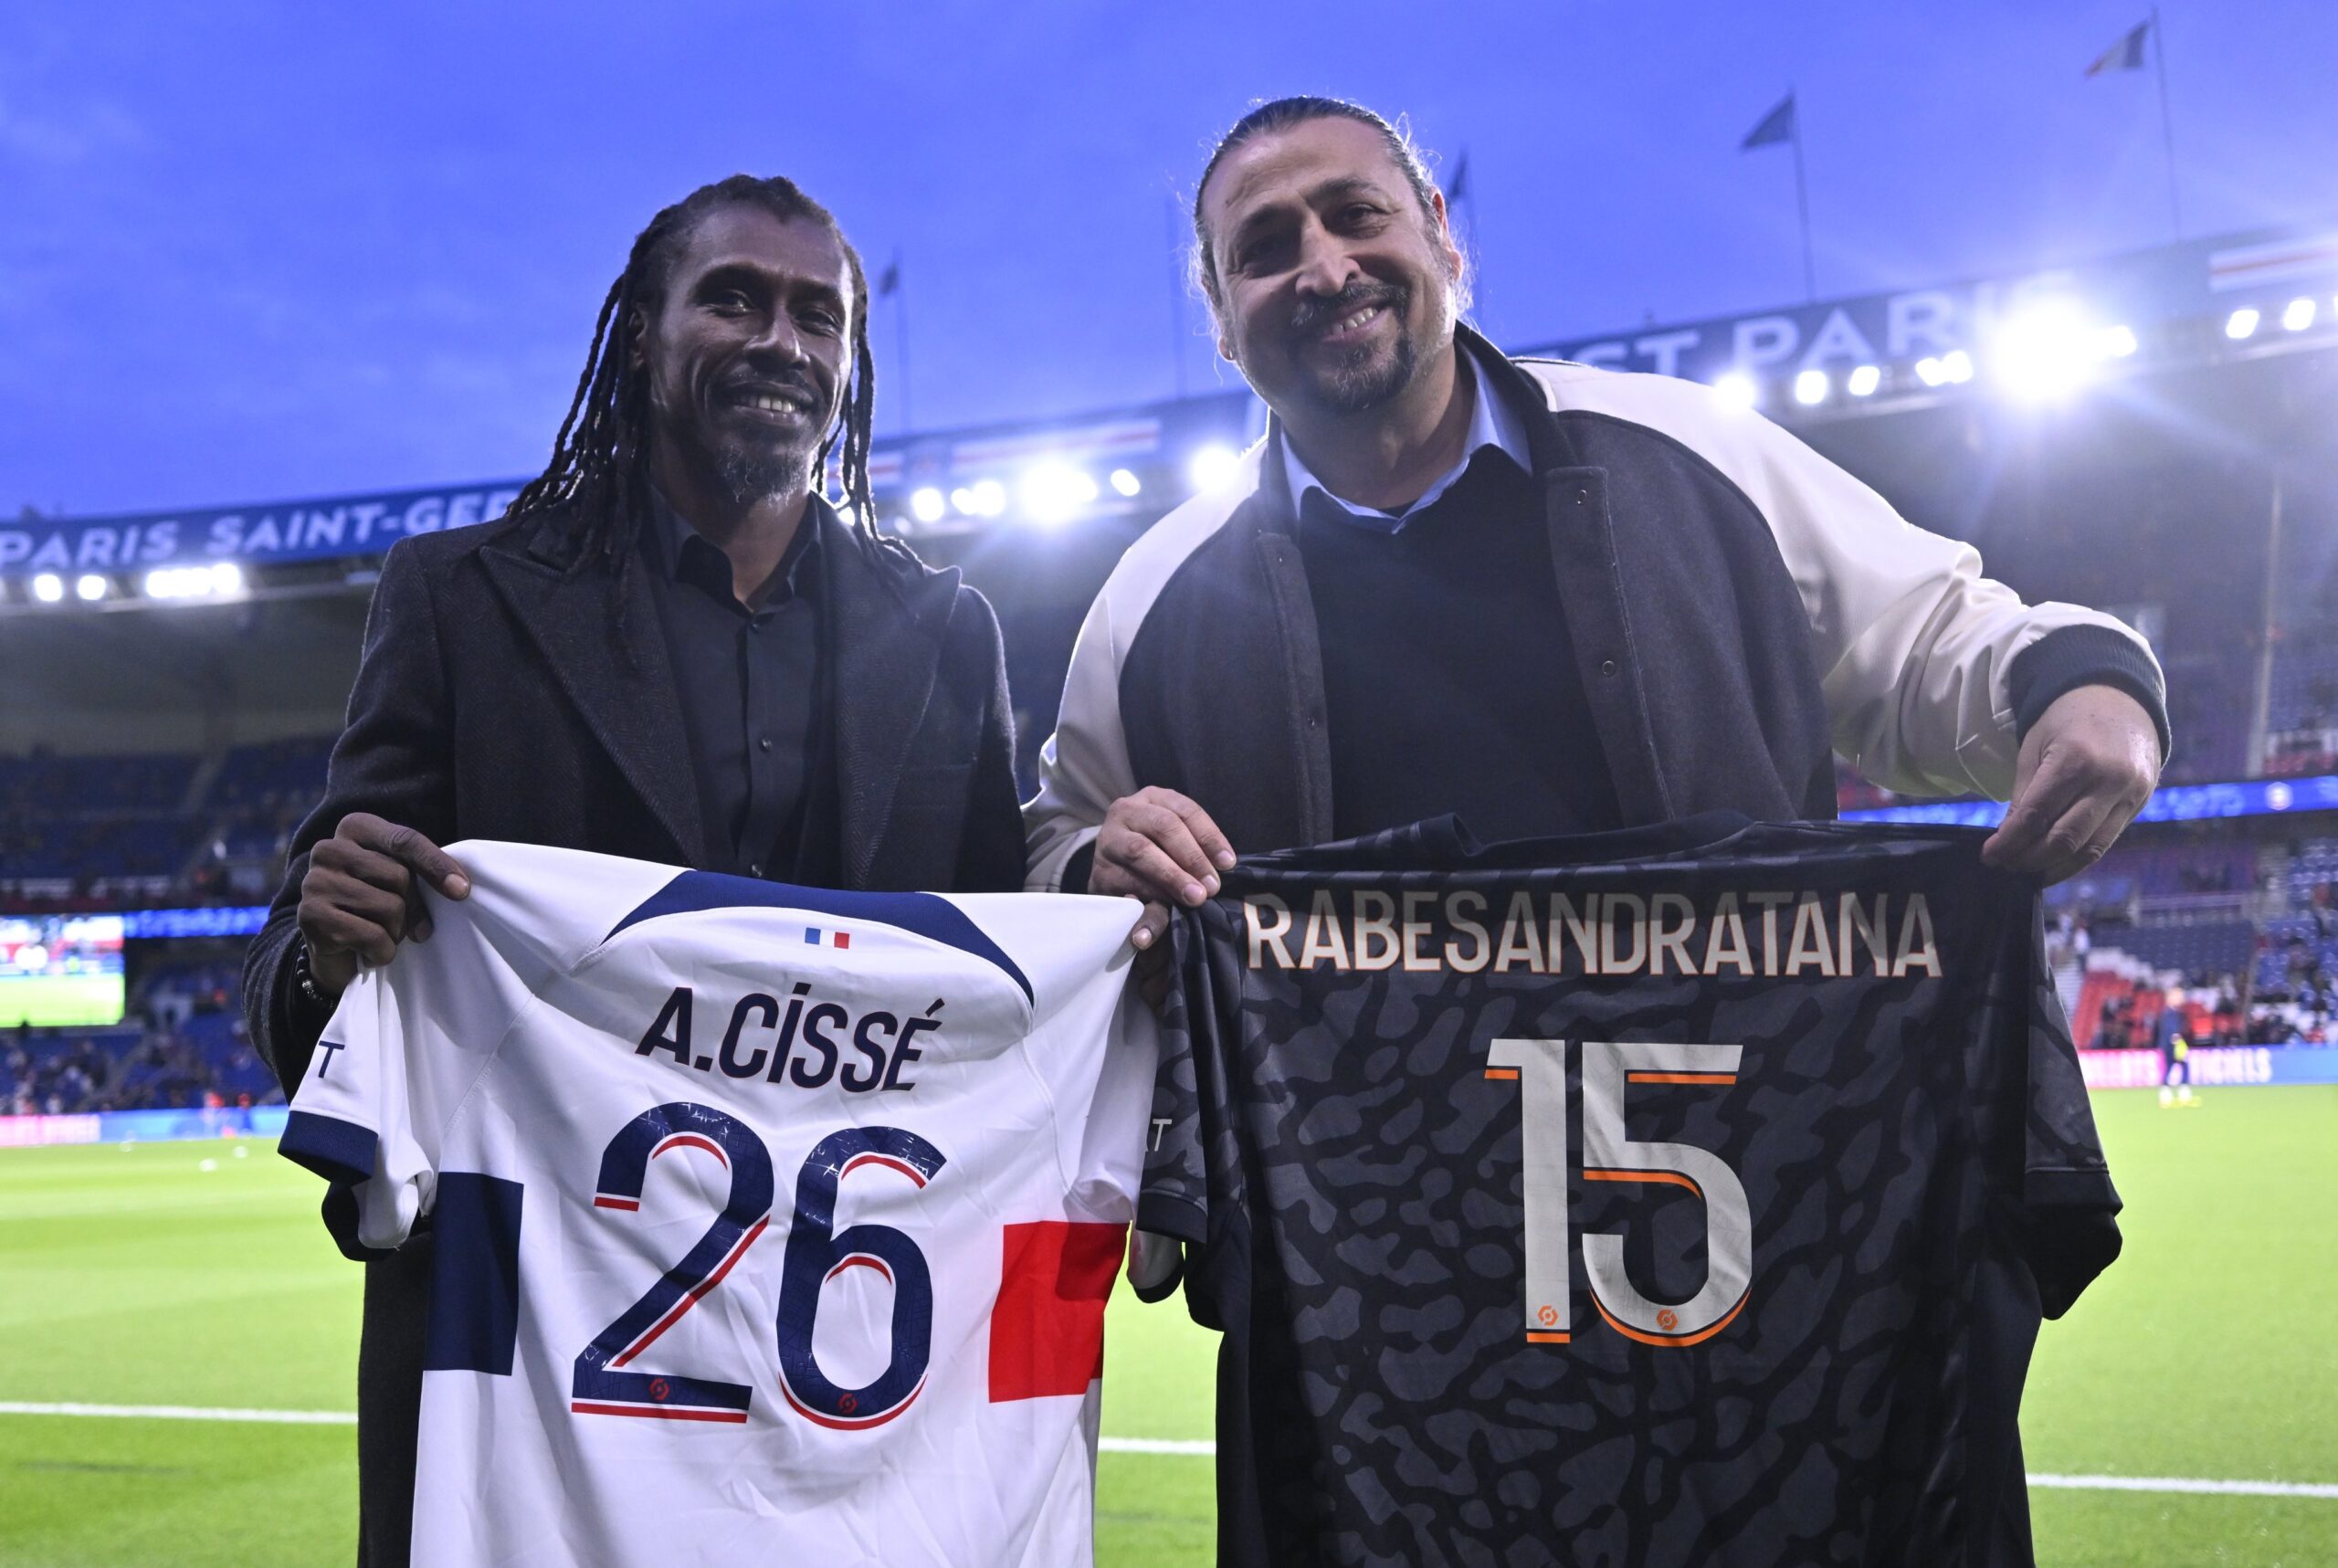 Aliou Cissé et Eric Rabésandratana lors de la mise en avant des anciens joueurs du PSG